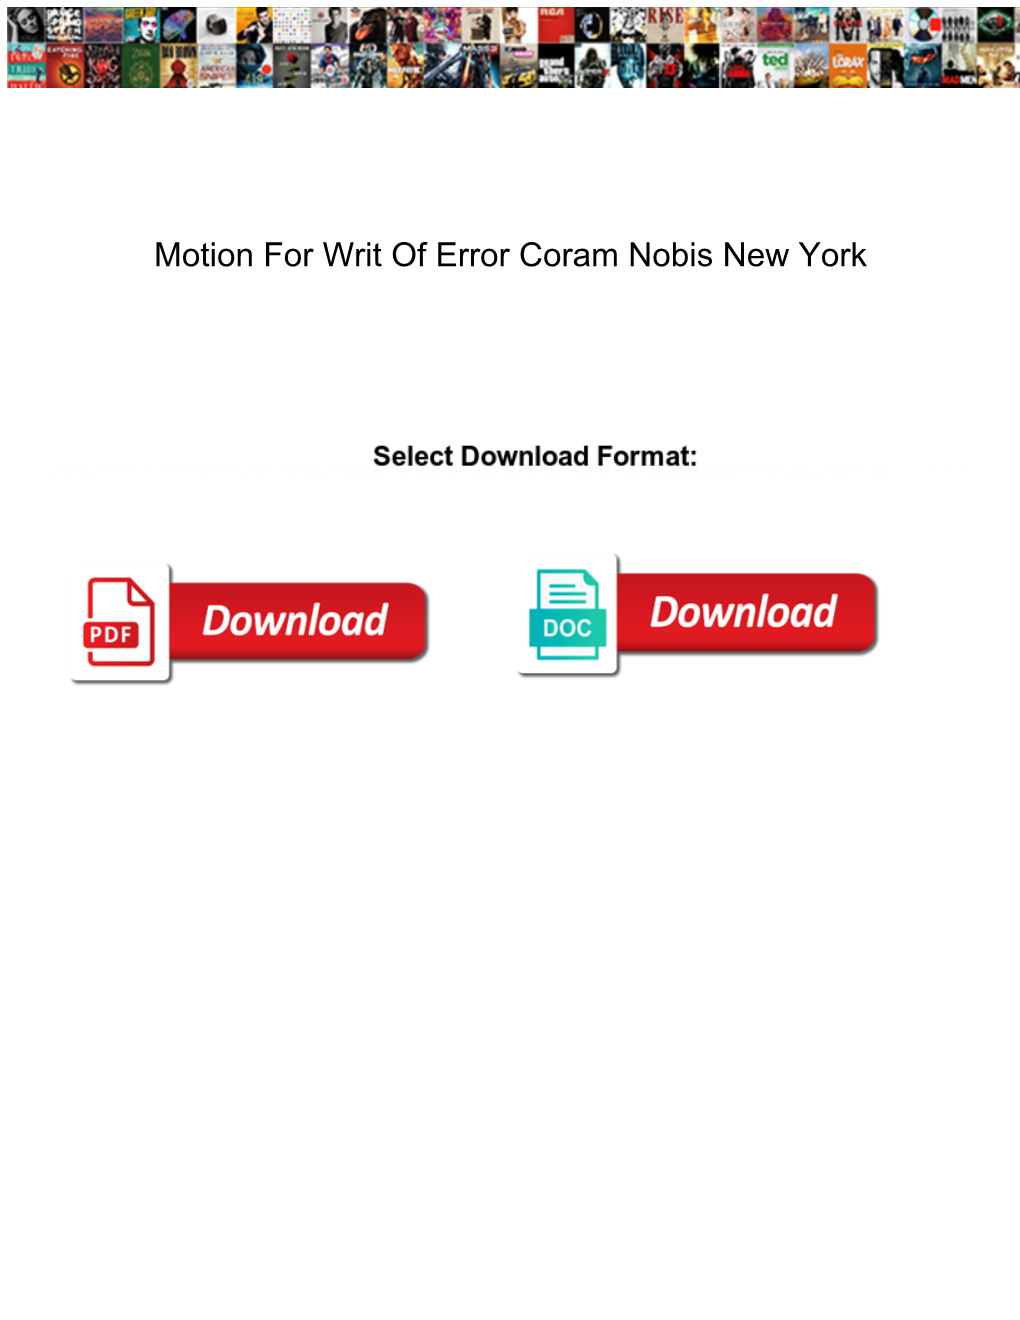 Motion for Writ of Error Coram Nobis New York